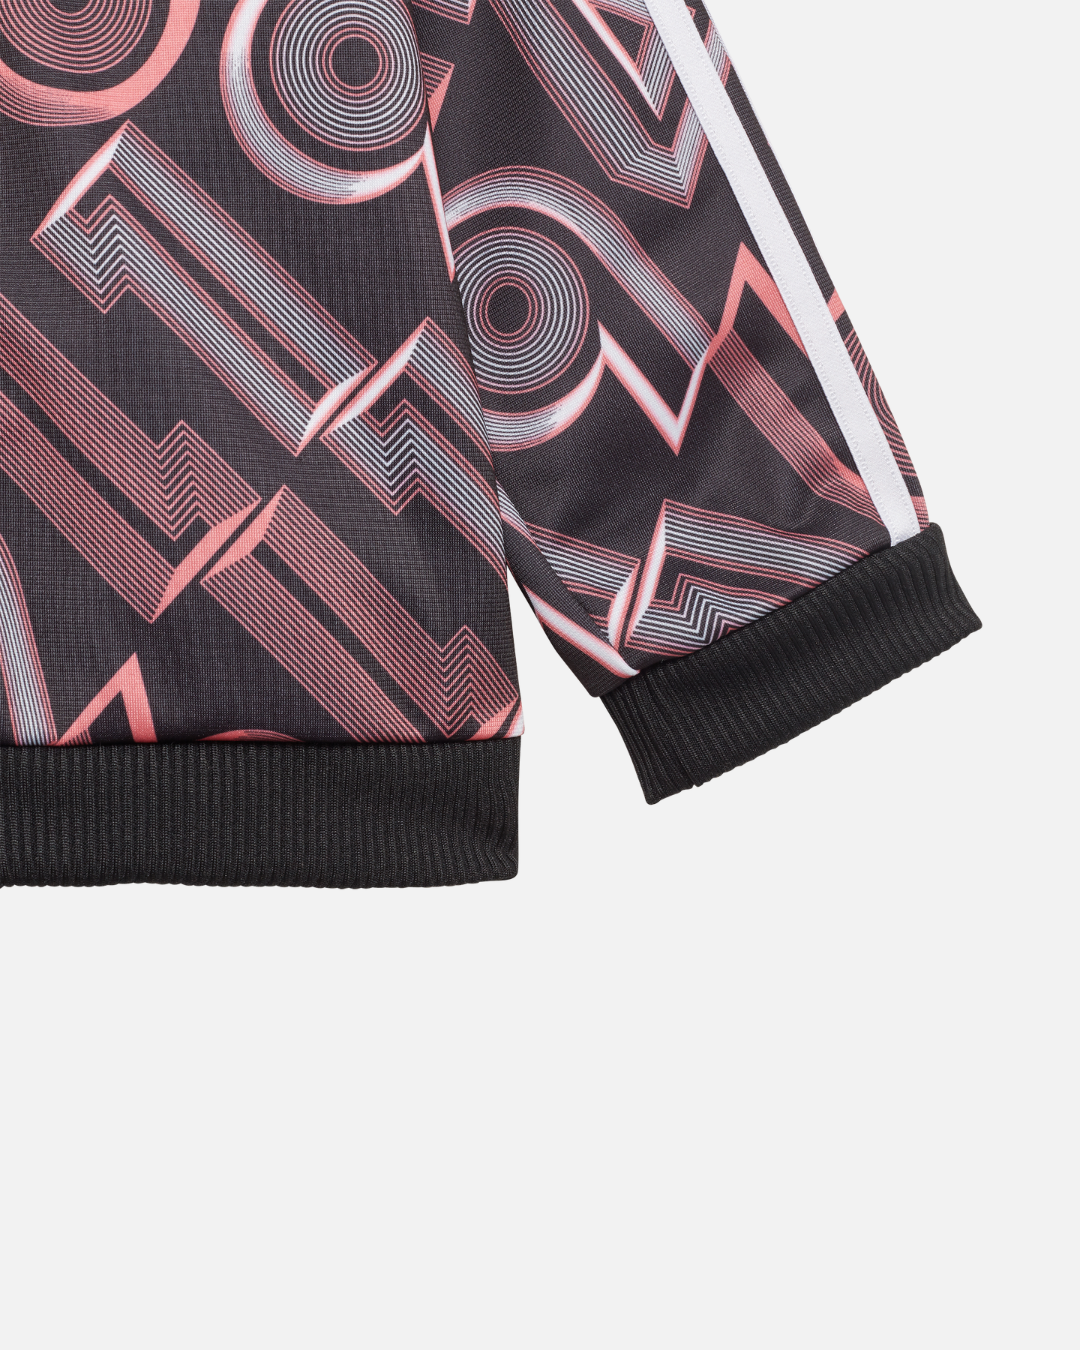 Survêtement Adidas Bébé Shiny Bold - Noir/Rose/Blanc